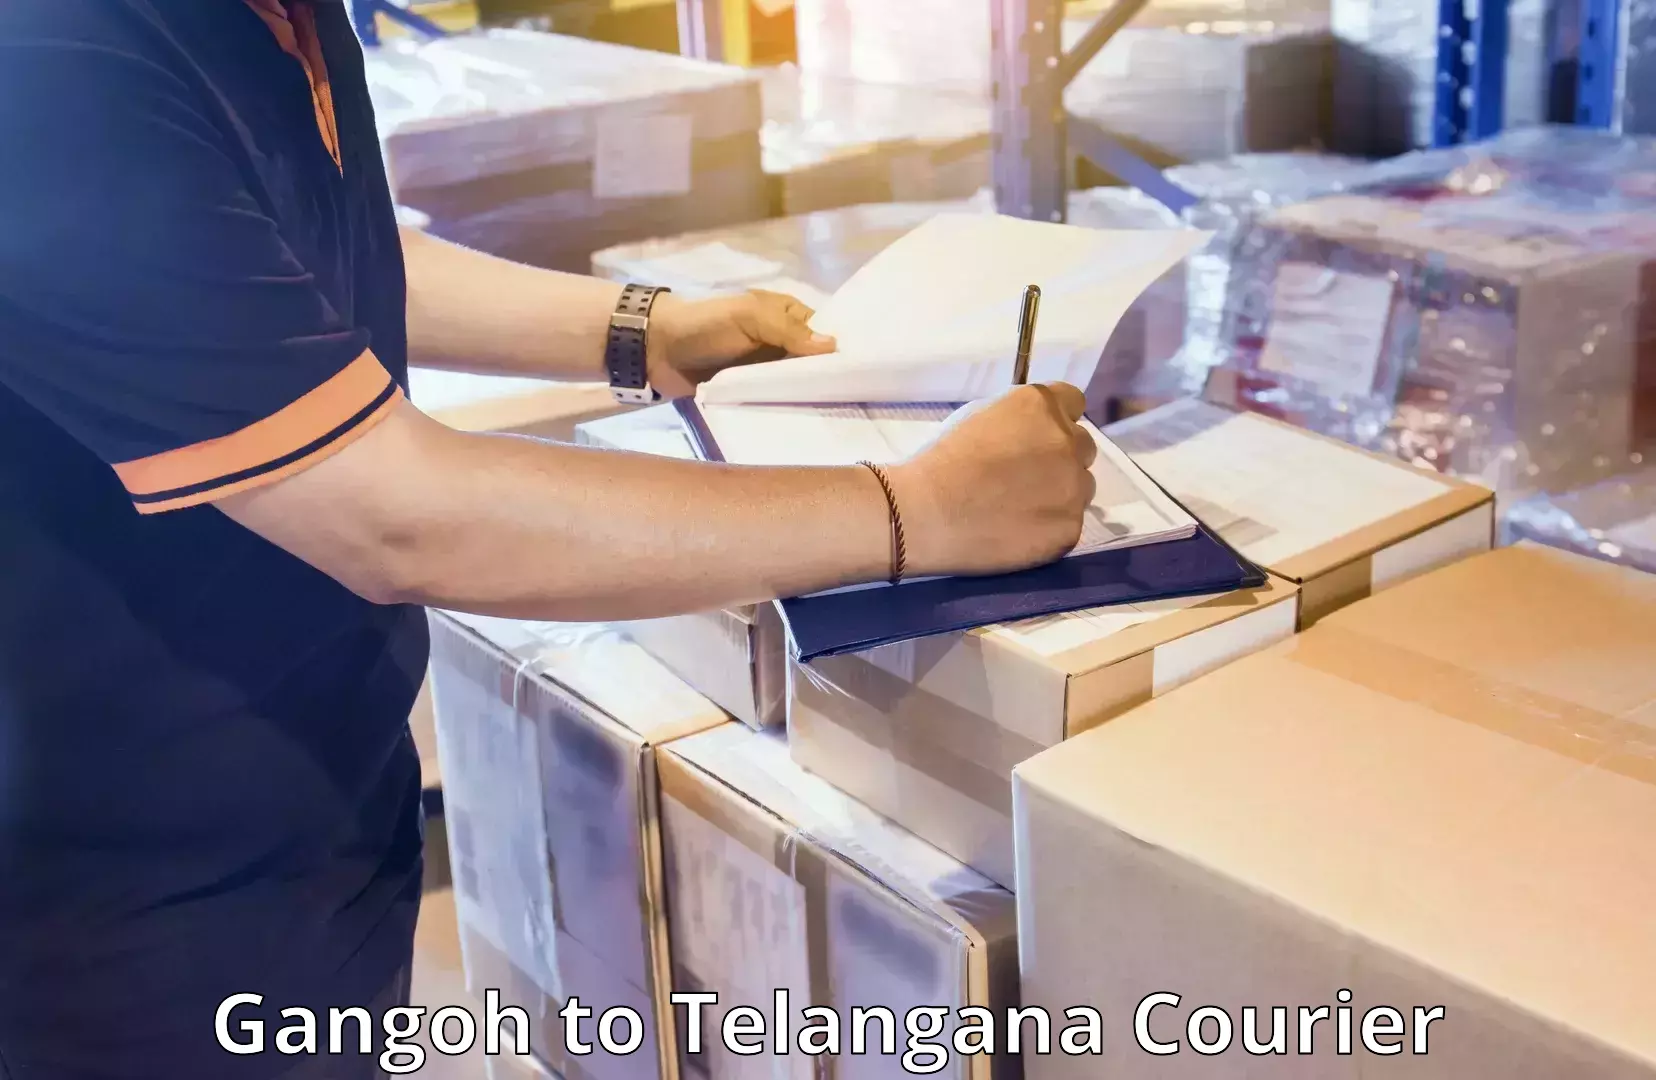 Luggage shipment specialists Gangoh to Telangana